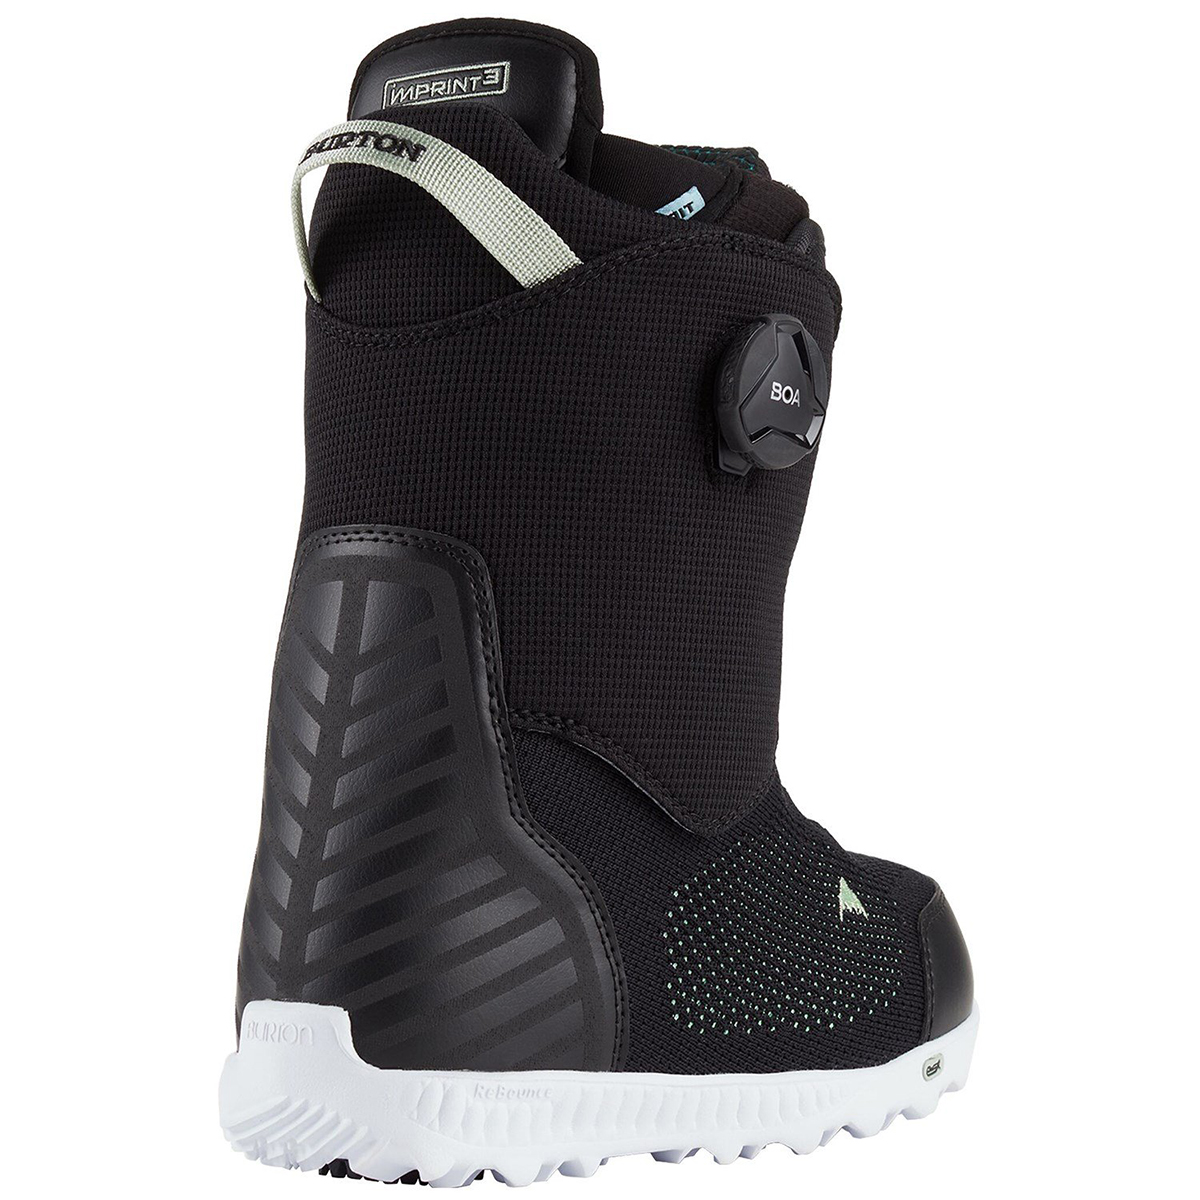 Ботинки сноубордические Burton 20-21 Ritual LTD Boa Black, цвет черный, размер 40,5 EUR 17125104001 - фото 2